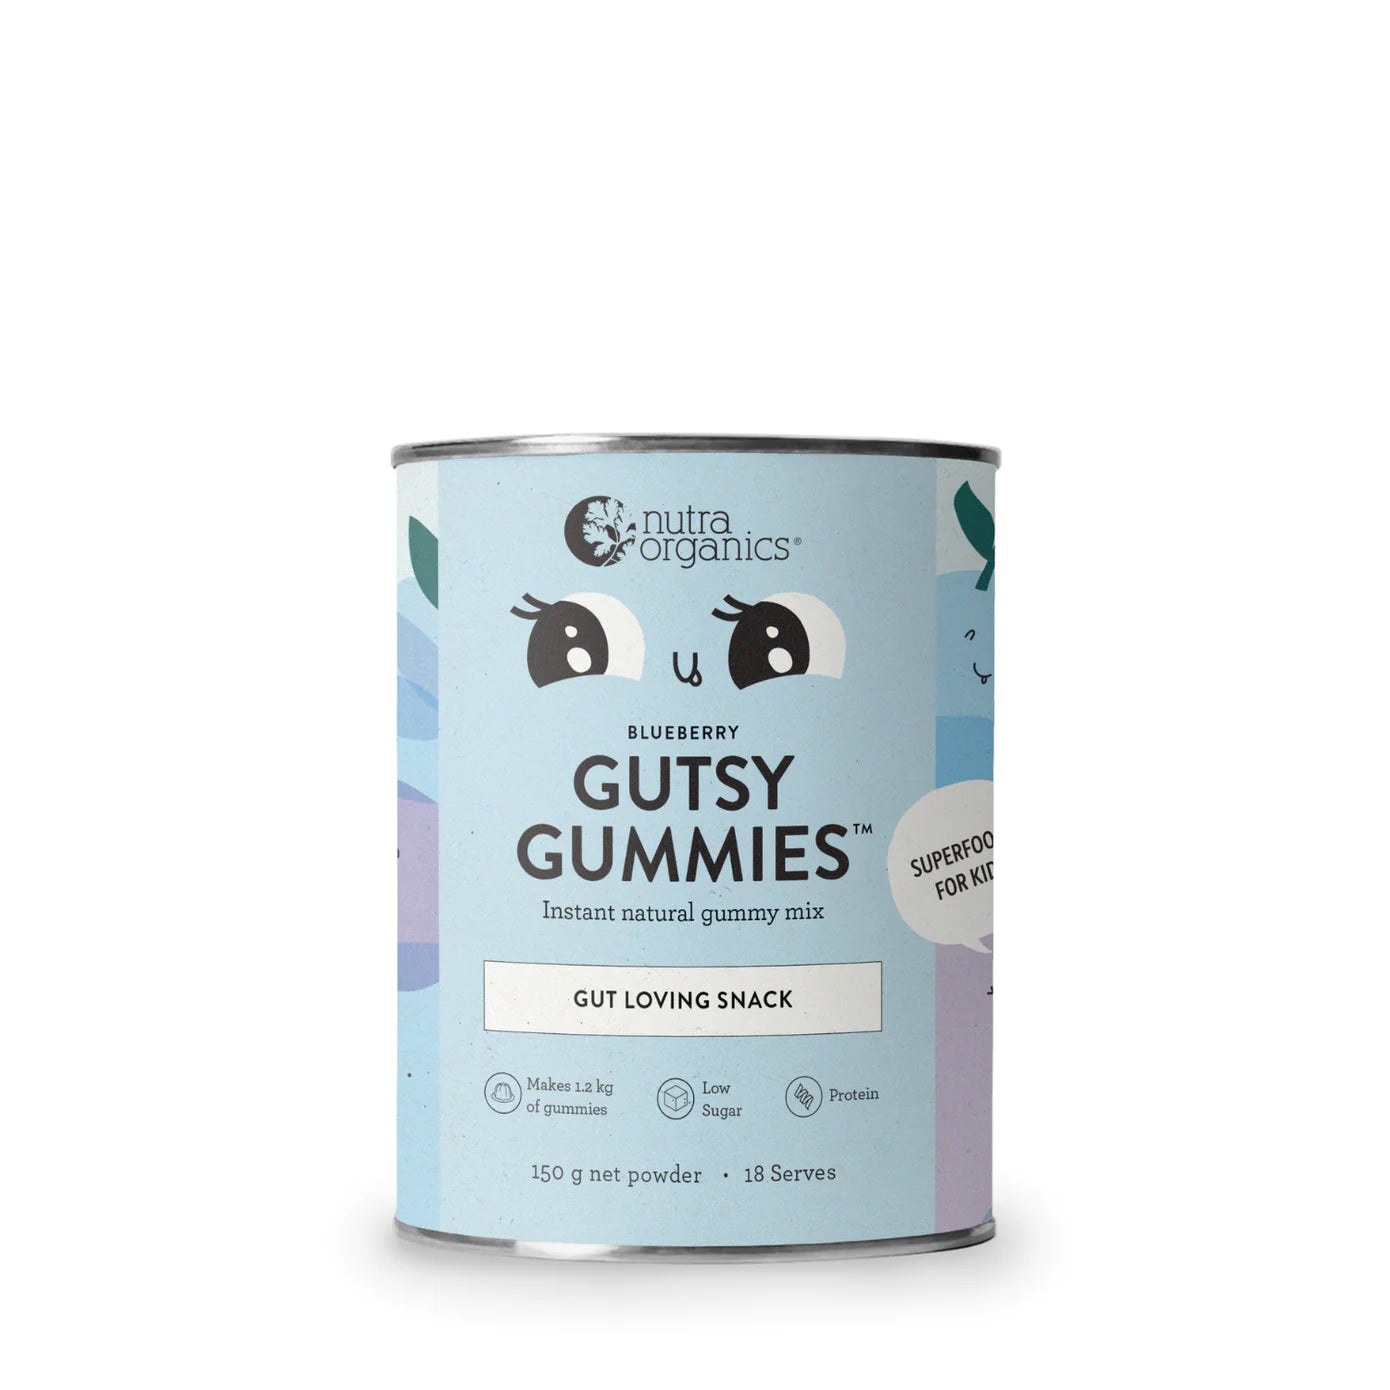 nutra organics gutsy gummies